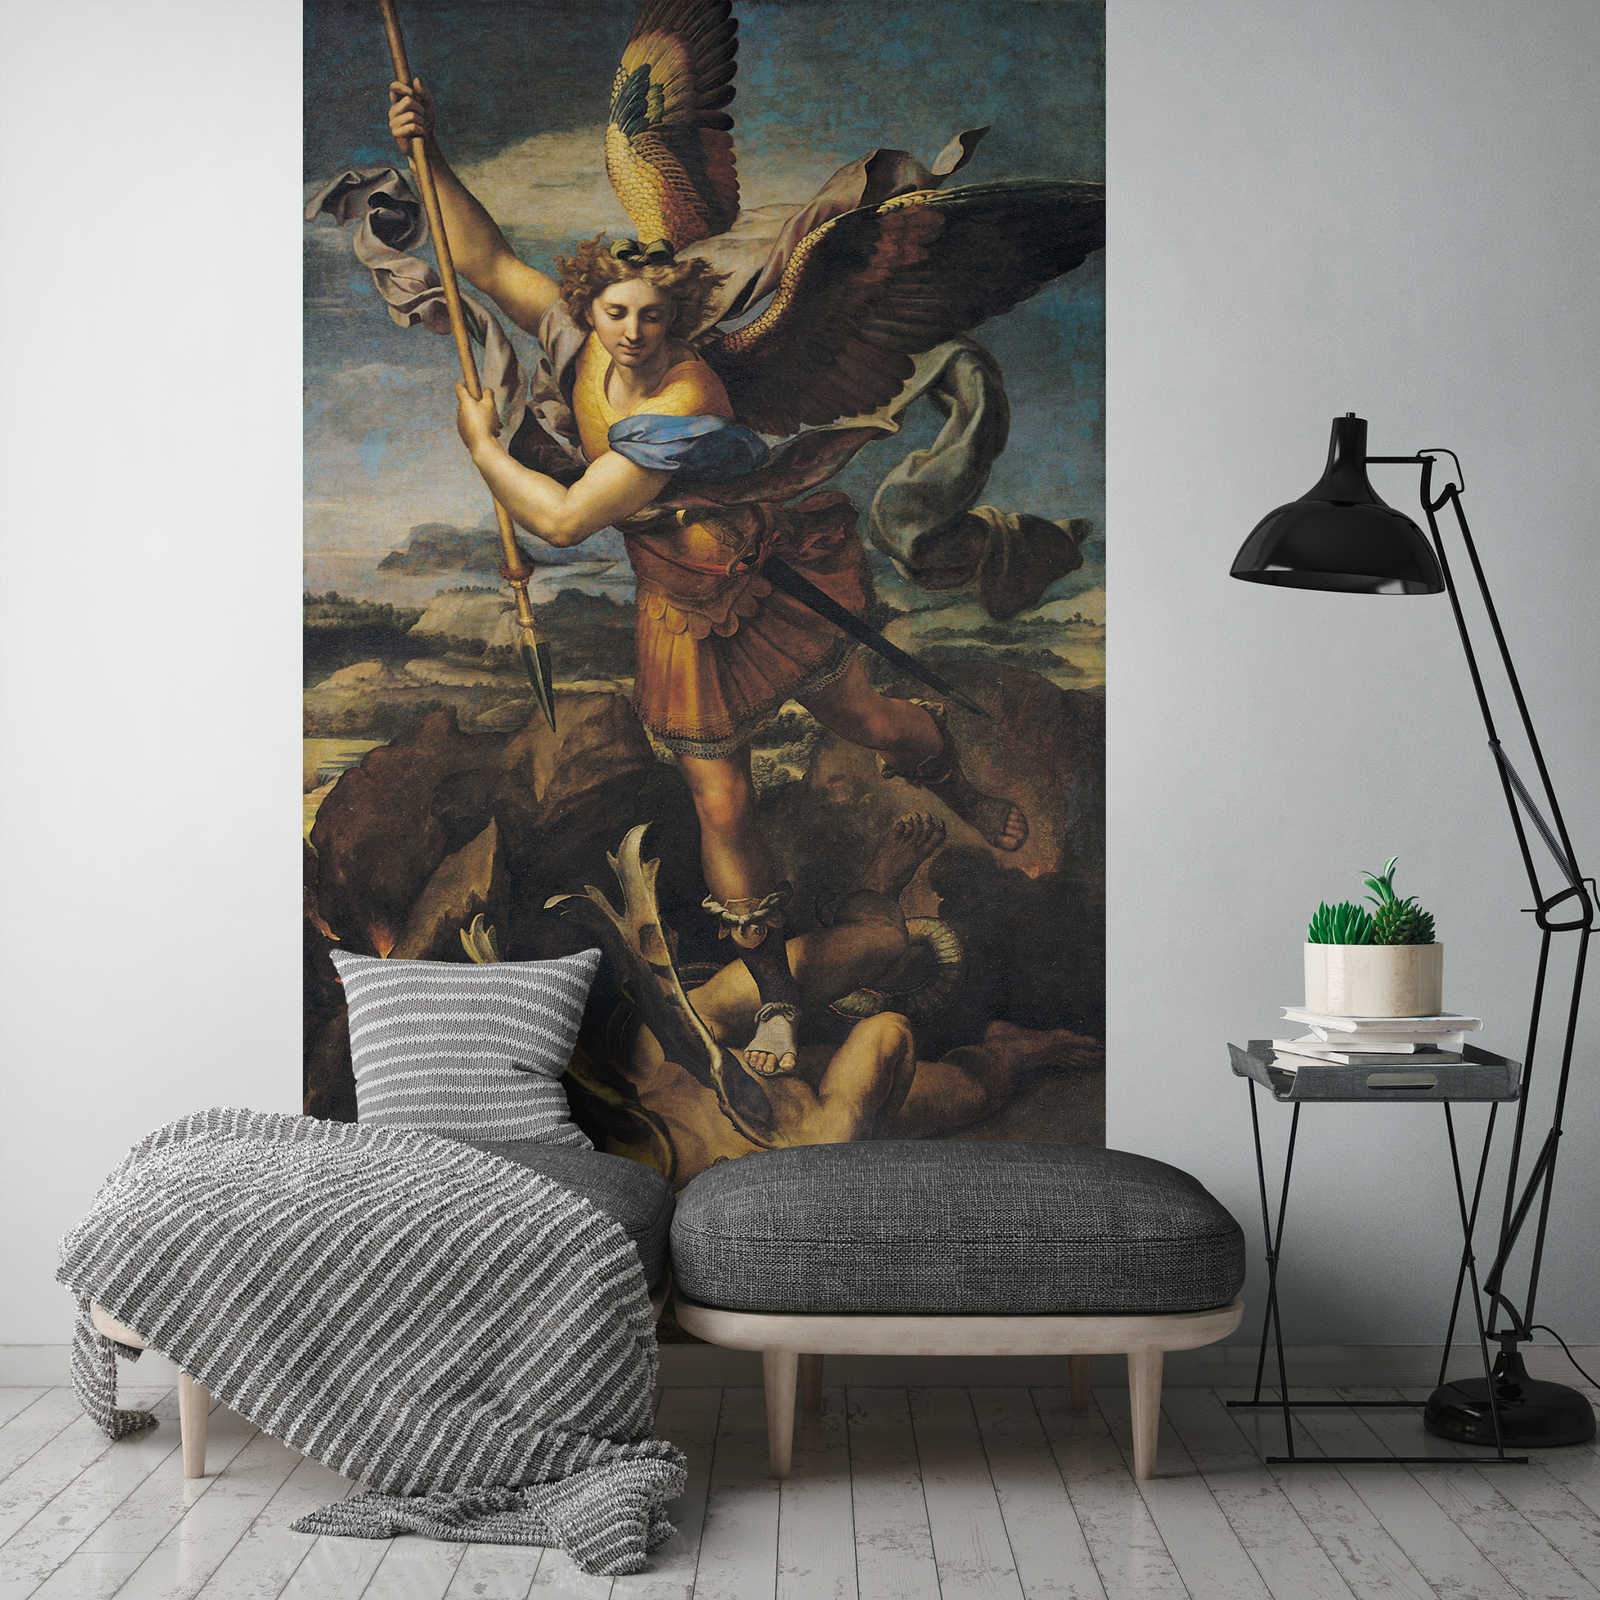             Mural "San Miguel mata al demonio" de Rafael
        